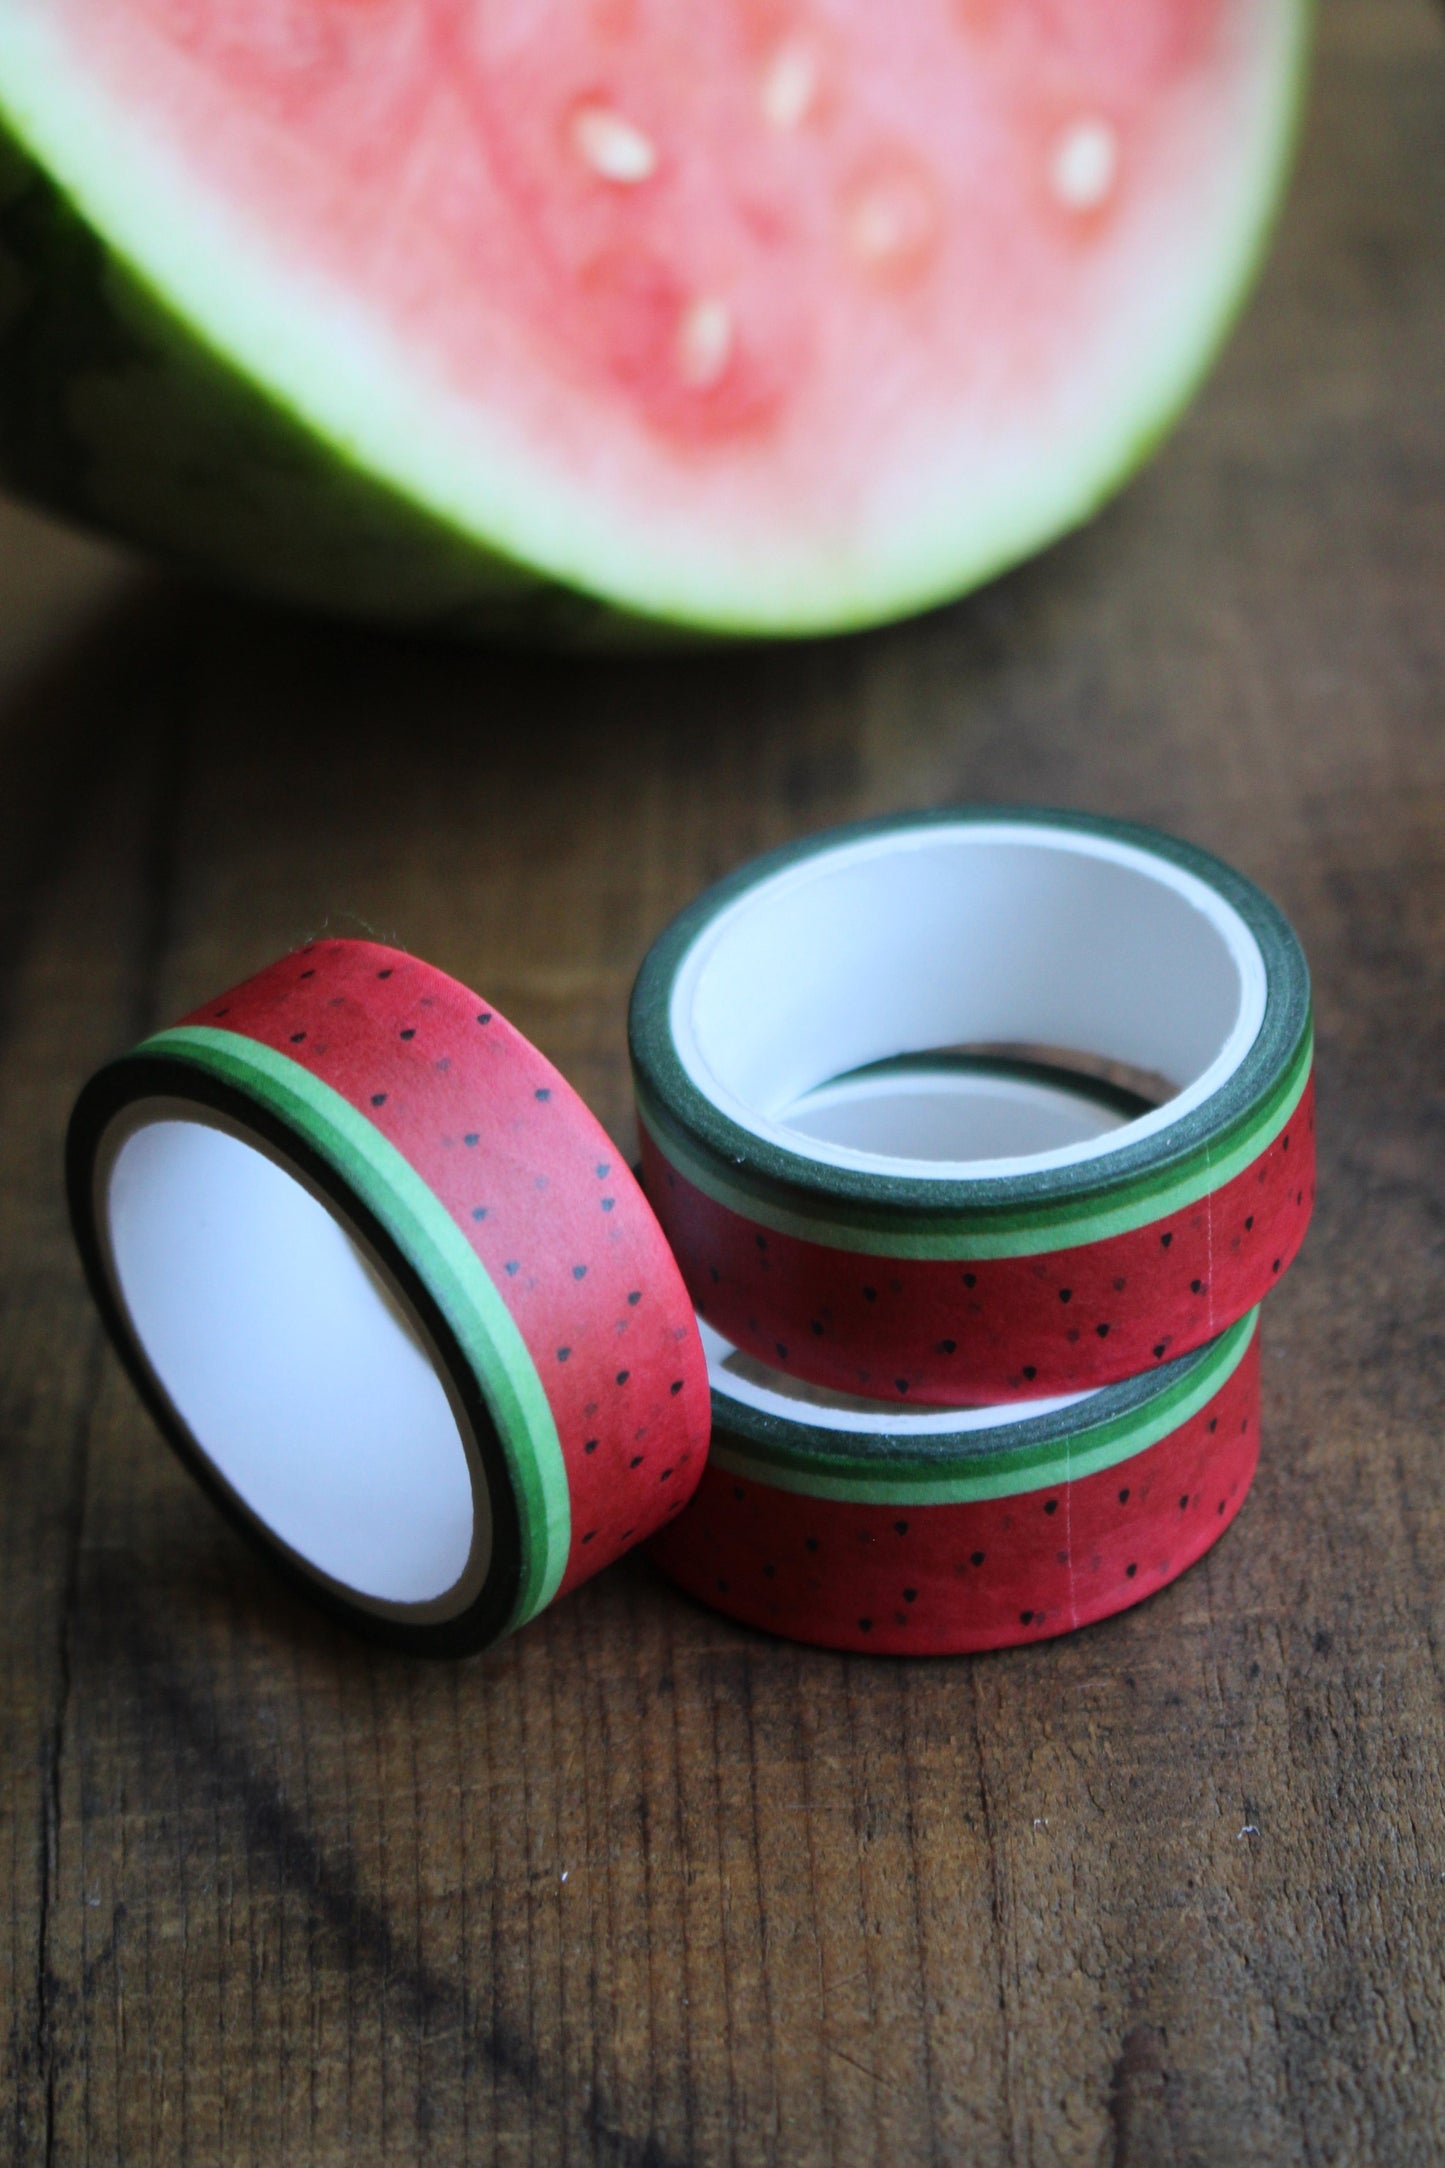 Watermelon Washi Tape